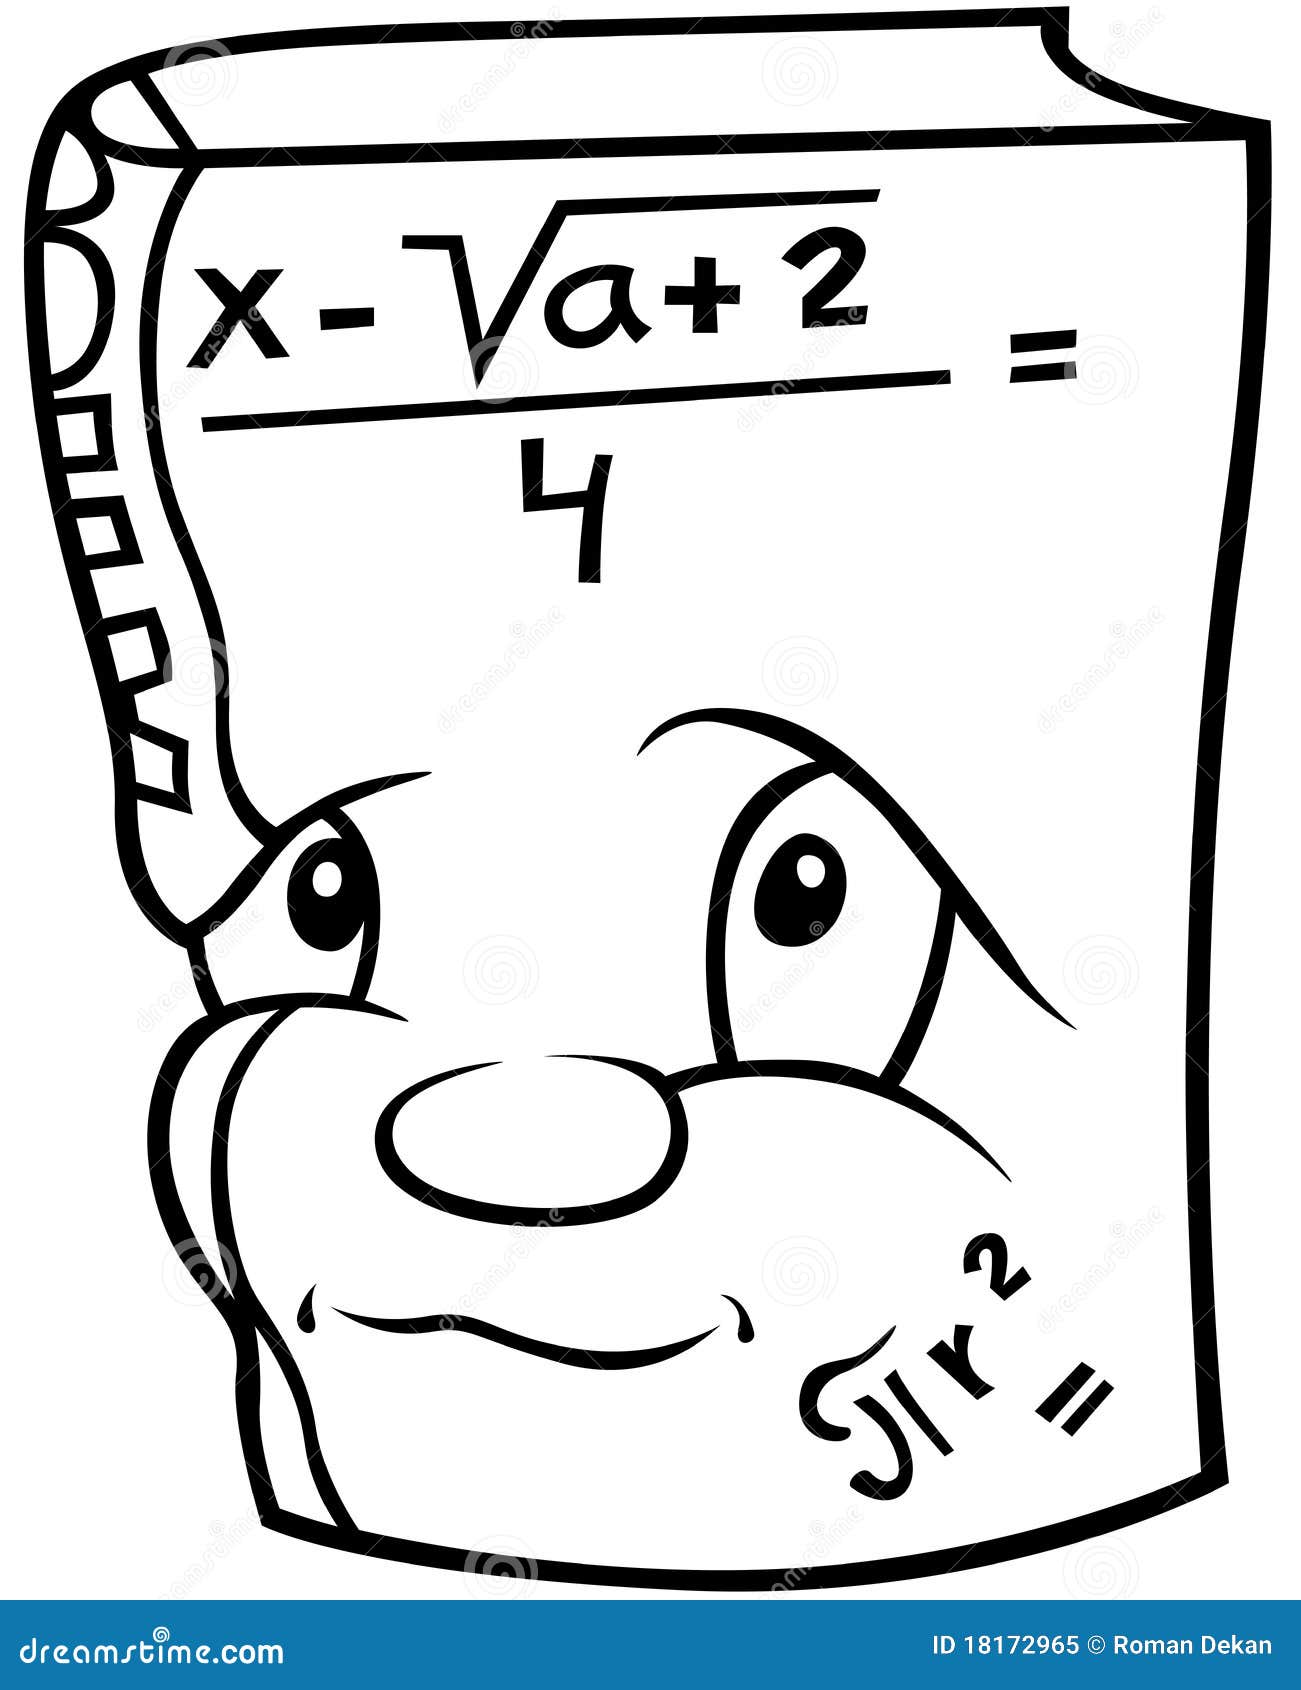 immagini clipart matematica - photo #7